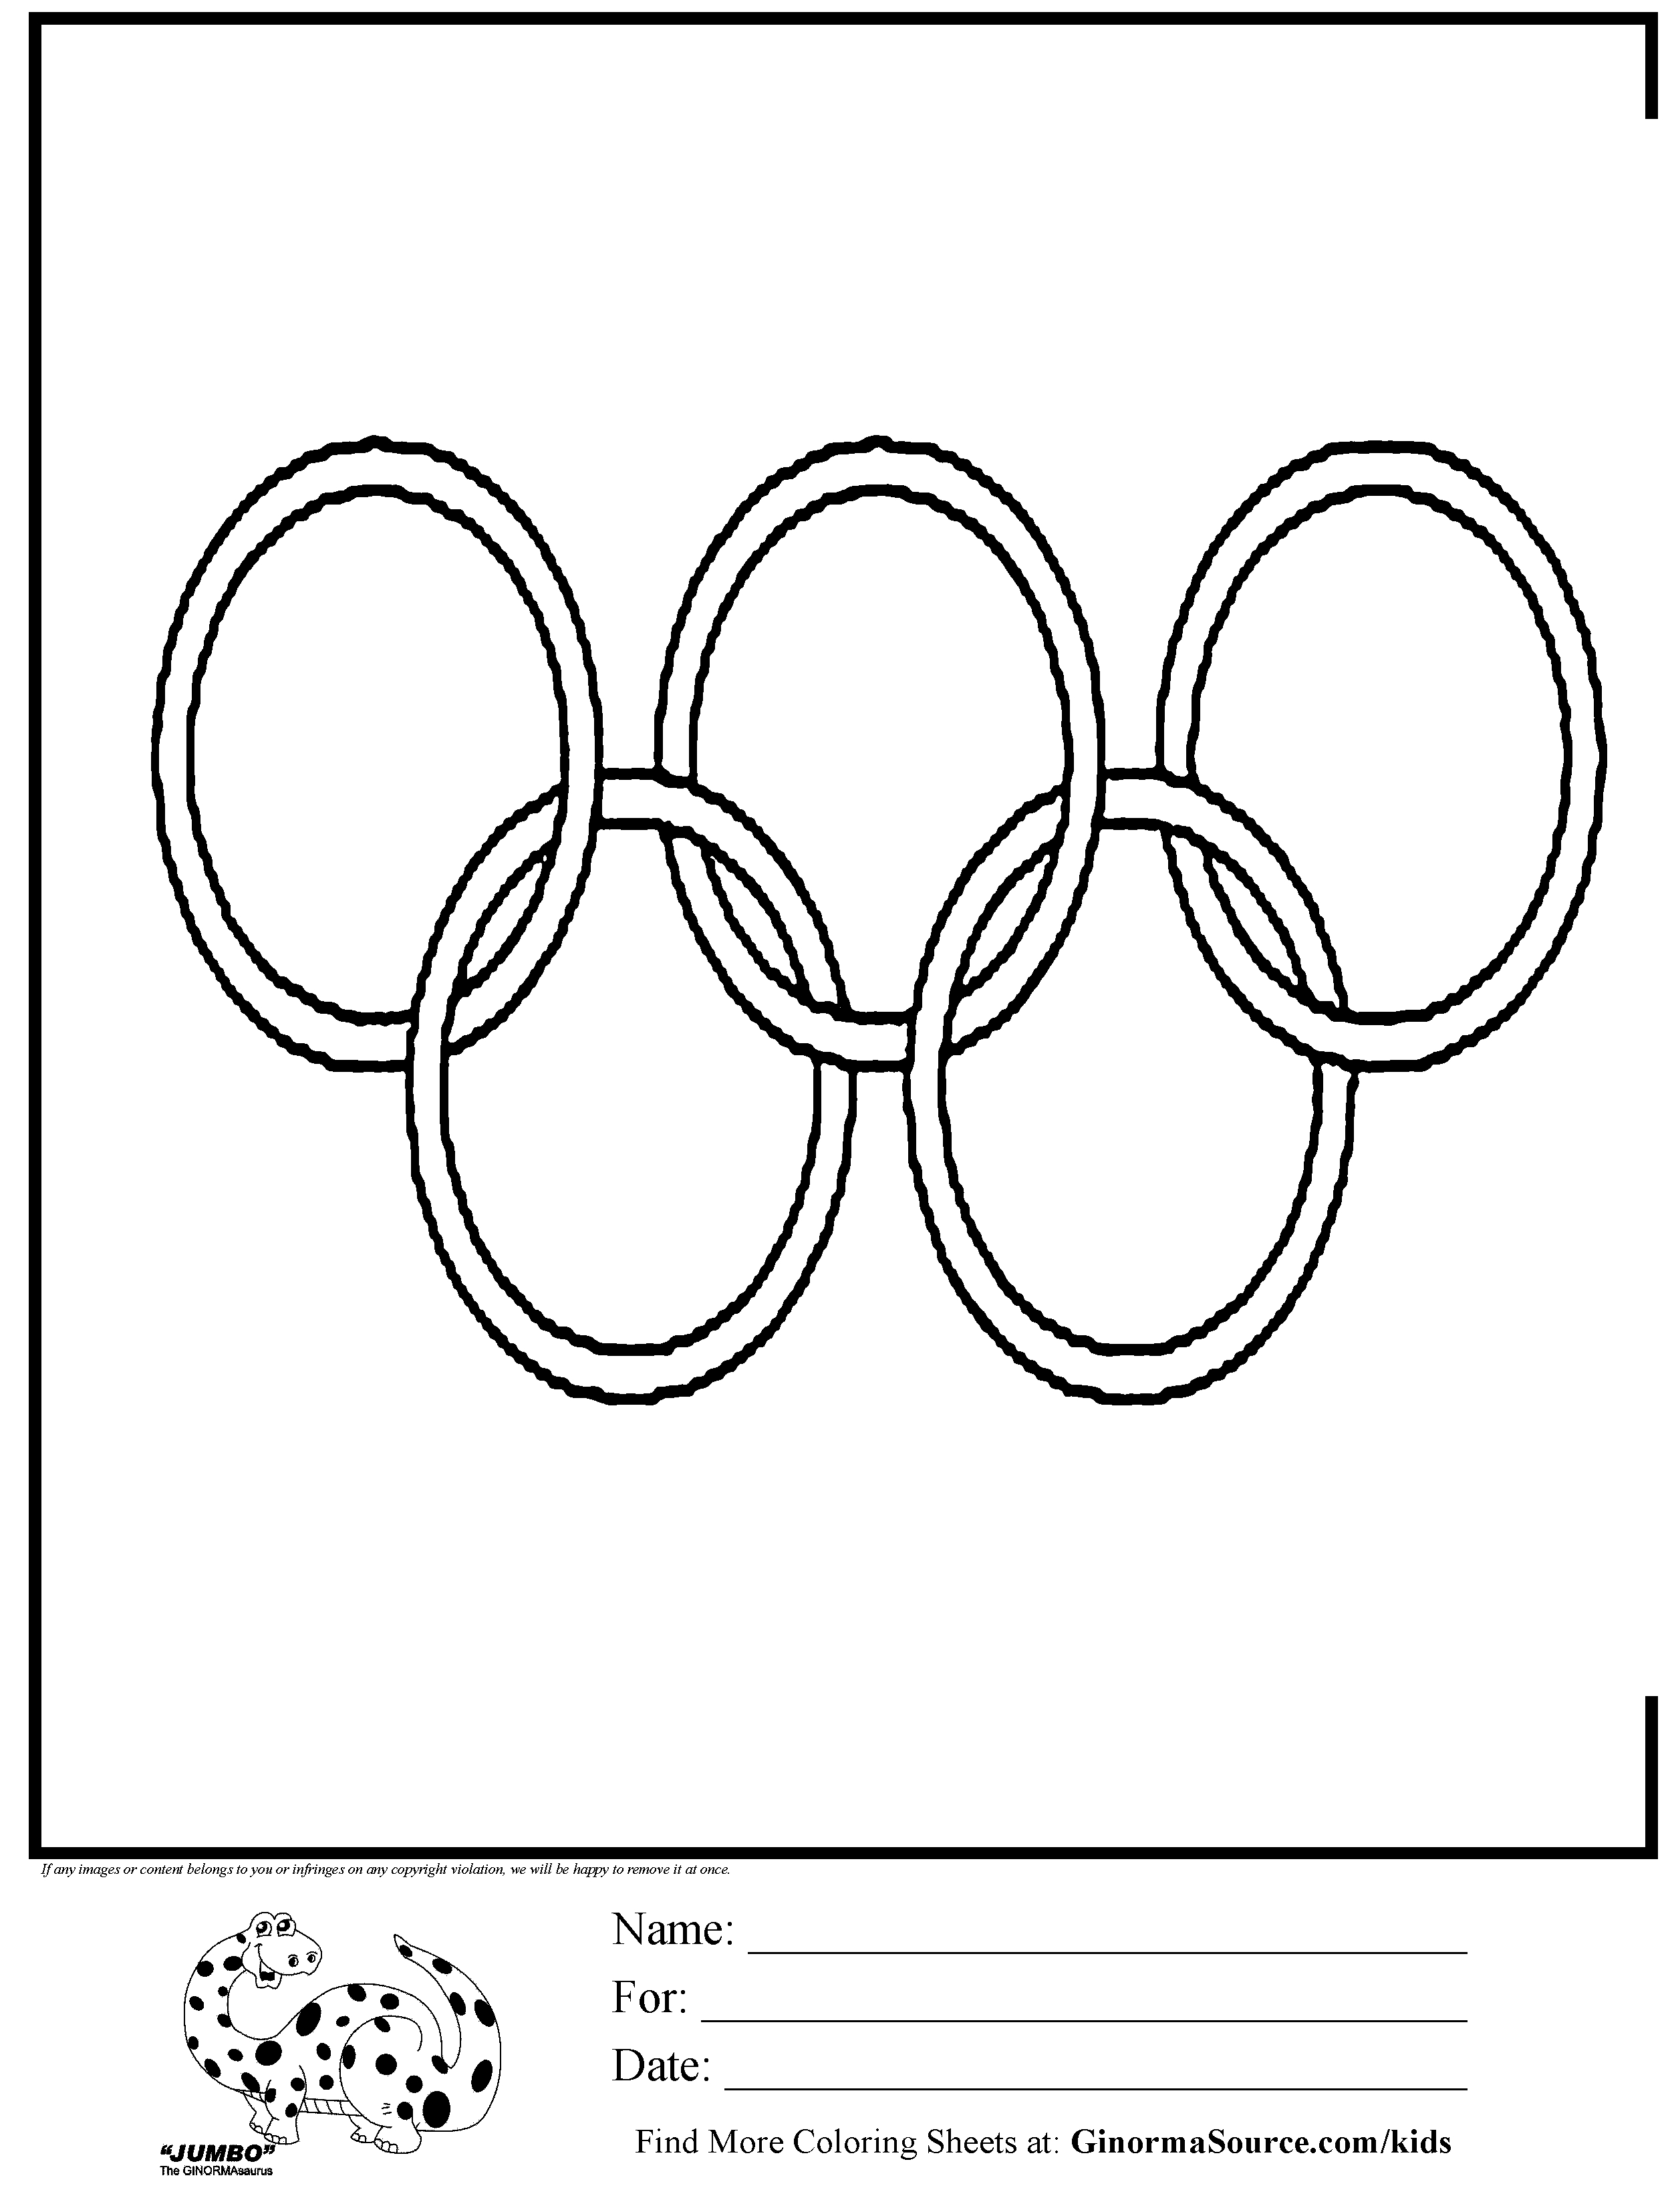 Раскраска идеальные кольца олимпийских игр